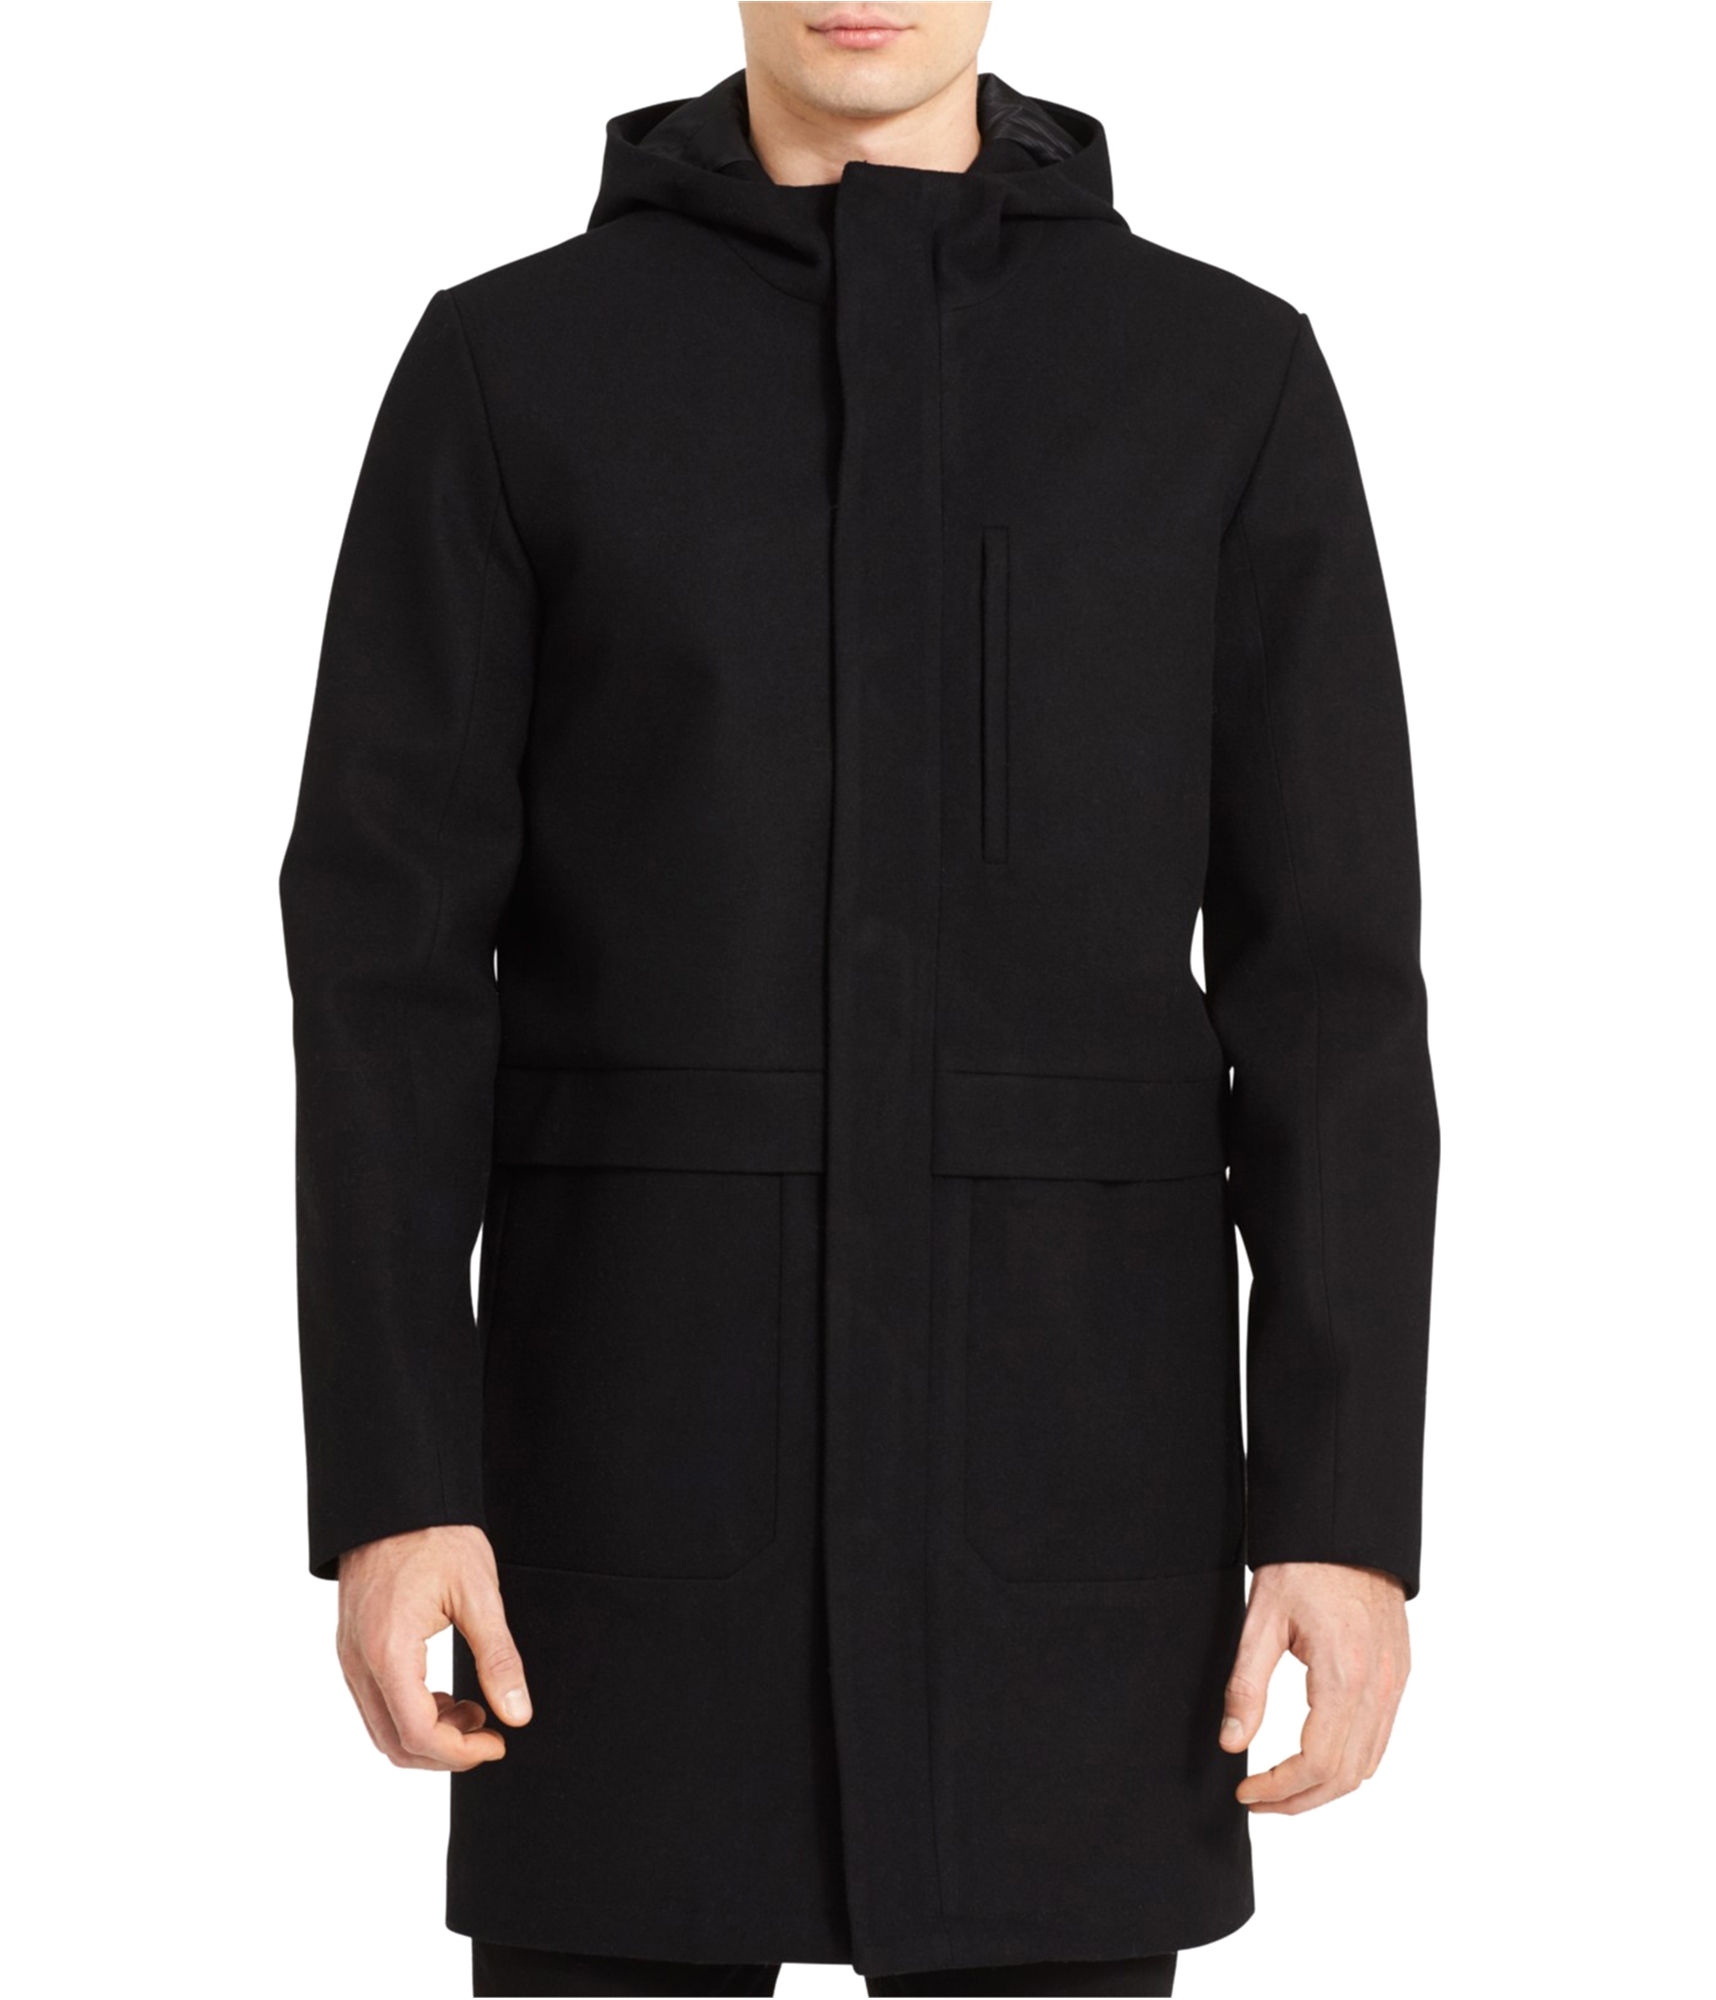 Buy a Mens Calvin Klein Merino Wool Jacket Online | TagsWeekly.com